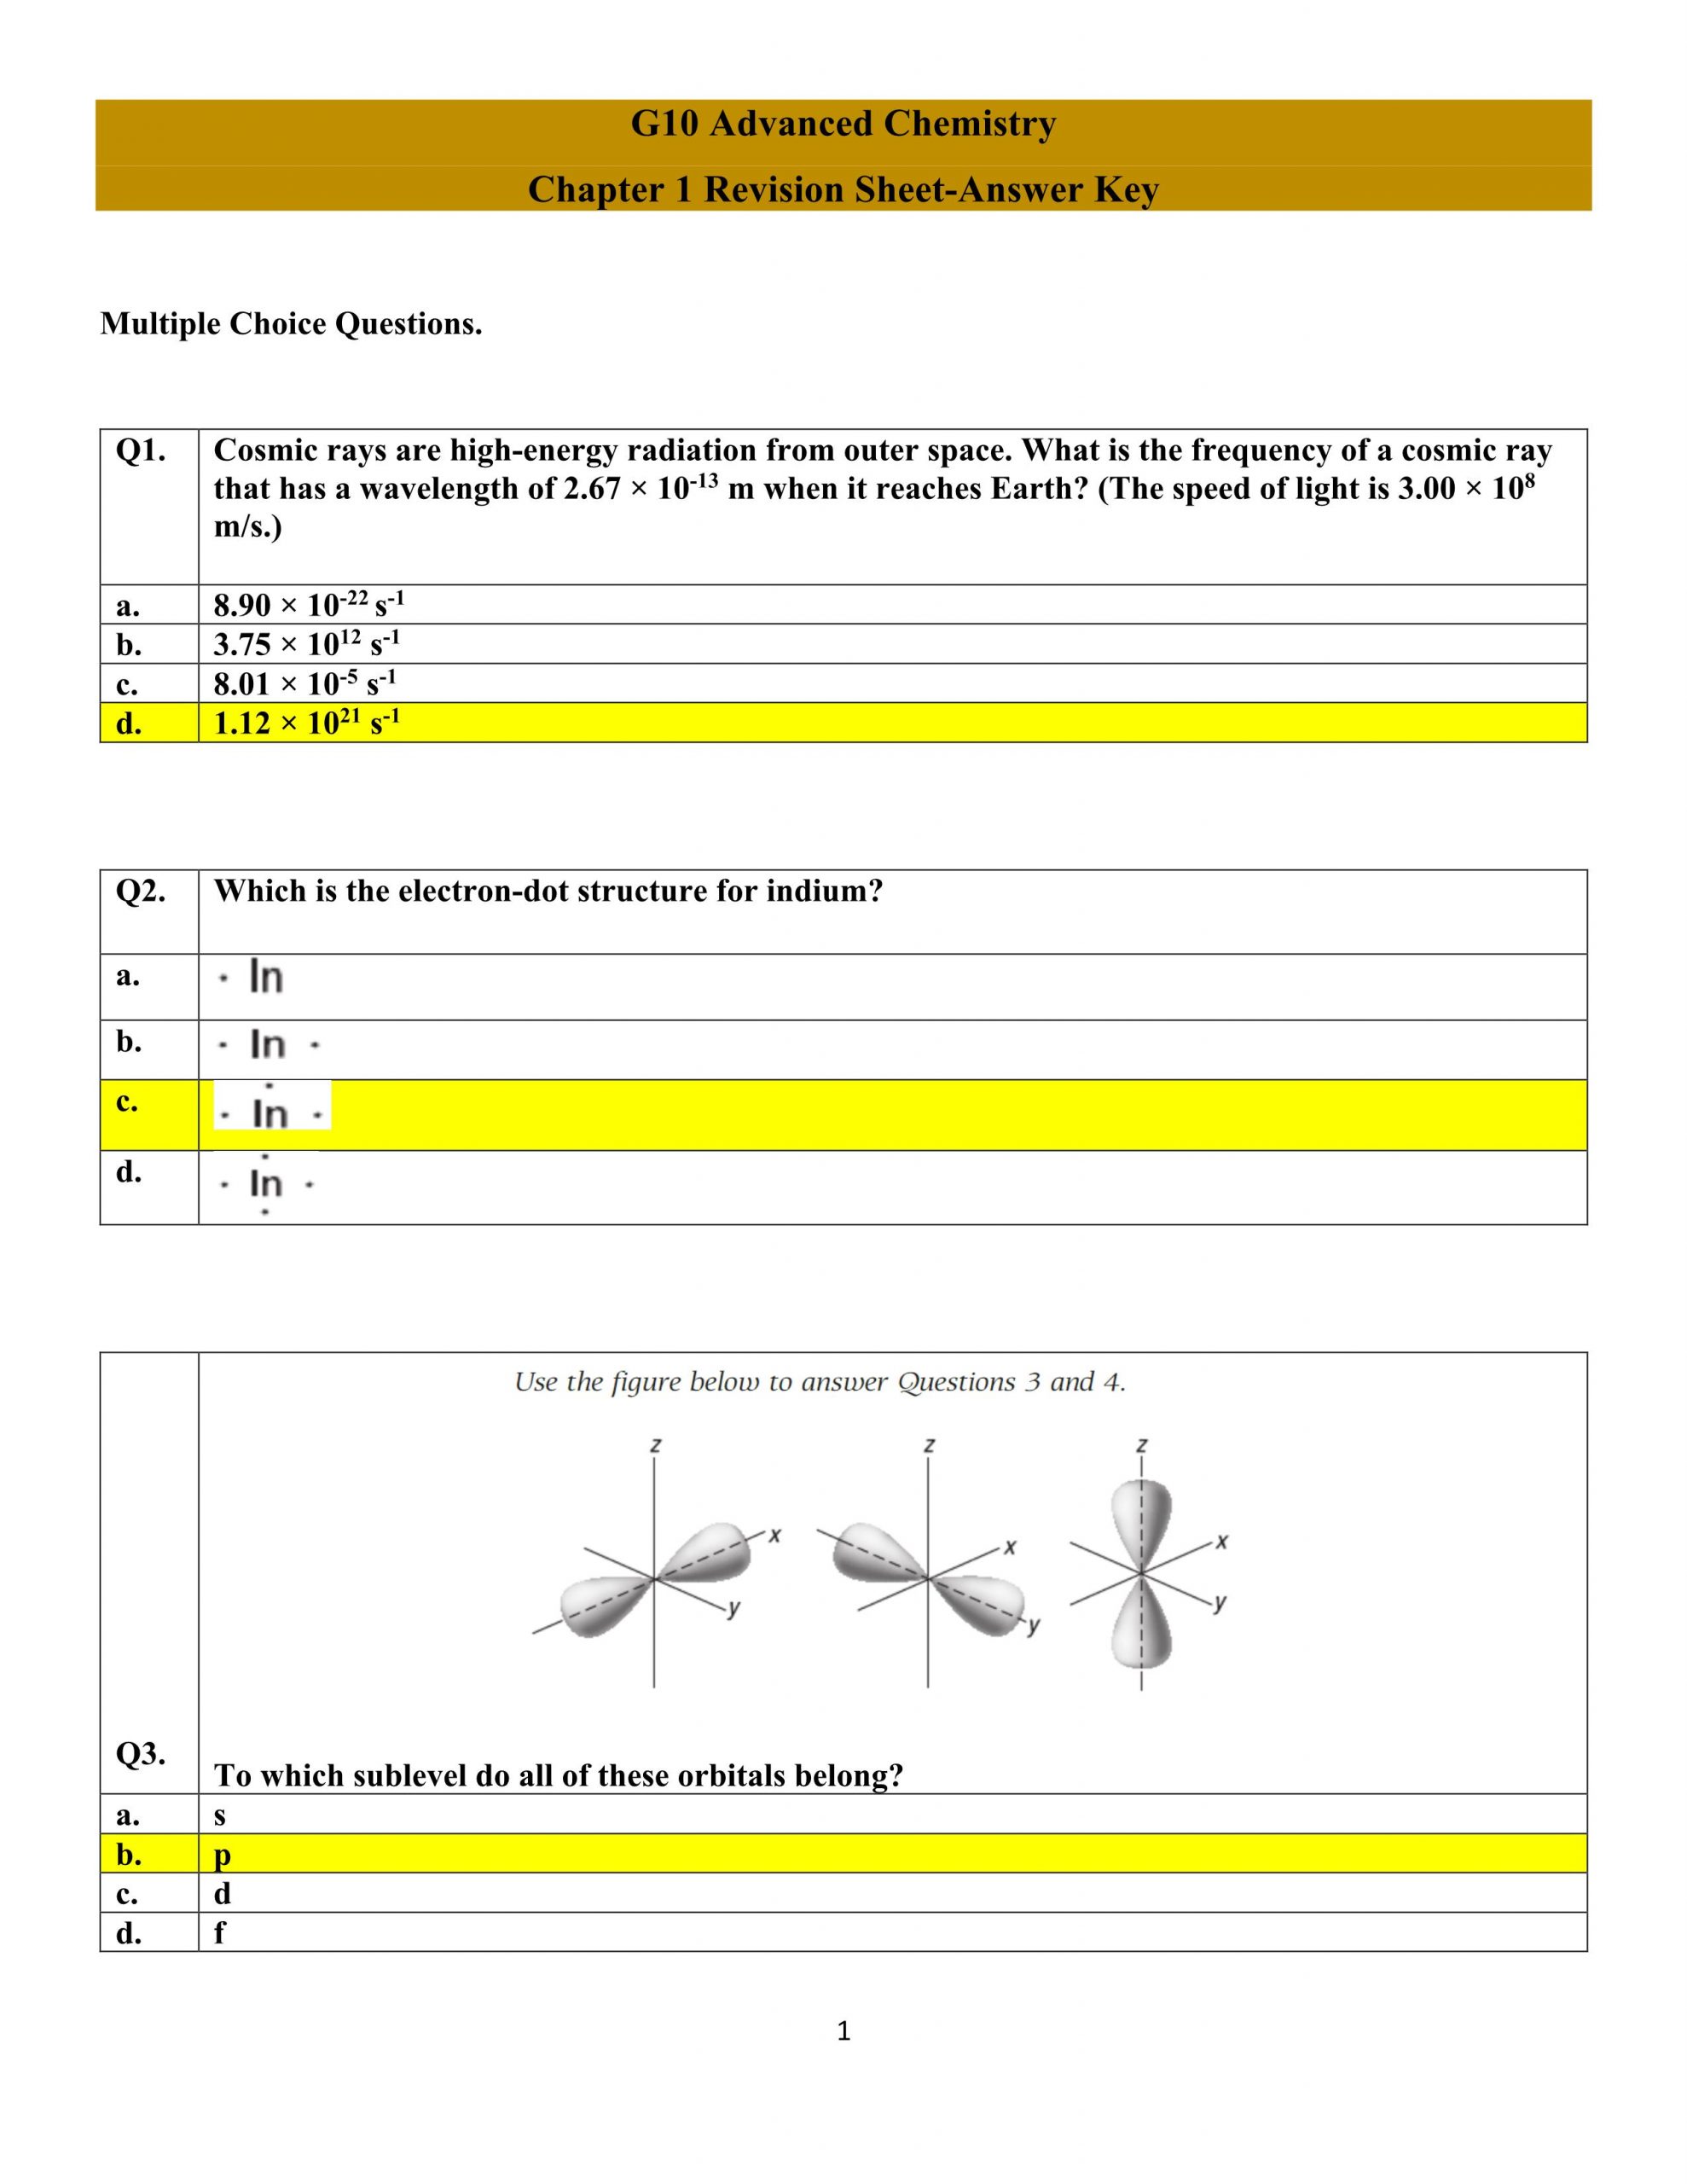 حل اوراق عمل Chapter 1 Revision Sheet الصف العاشر متقدم مادة الكيمياء